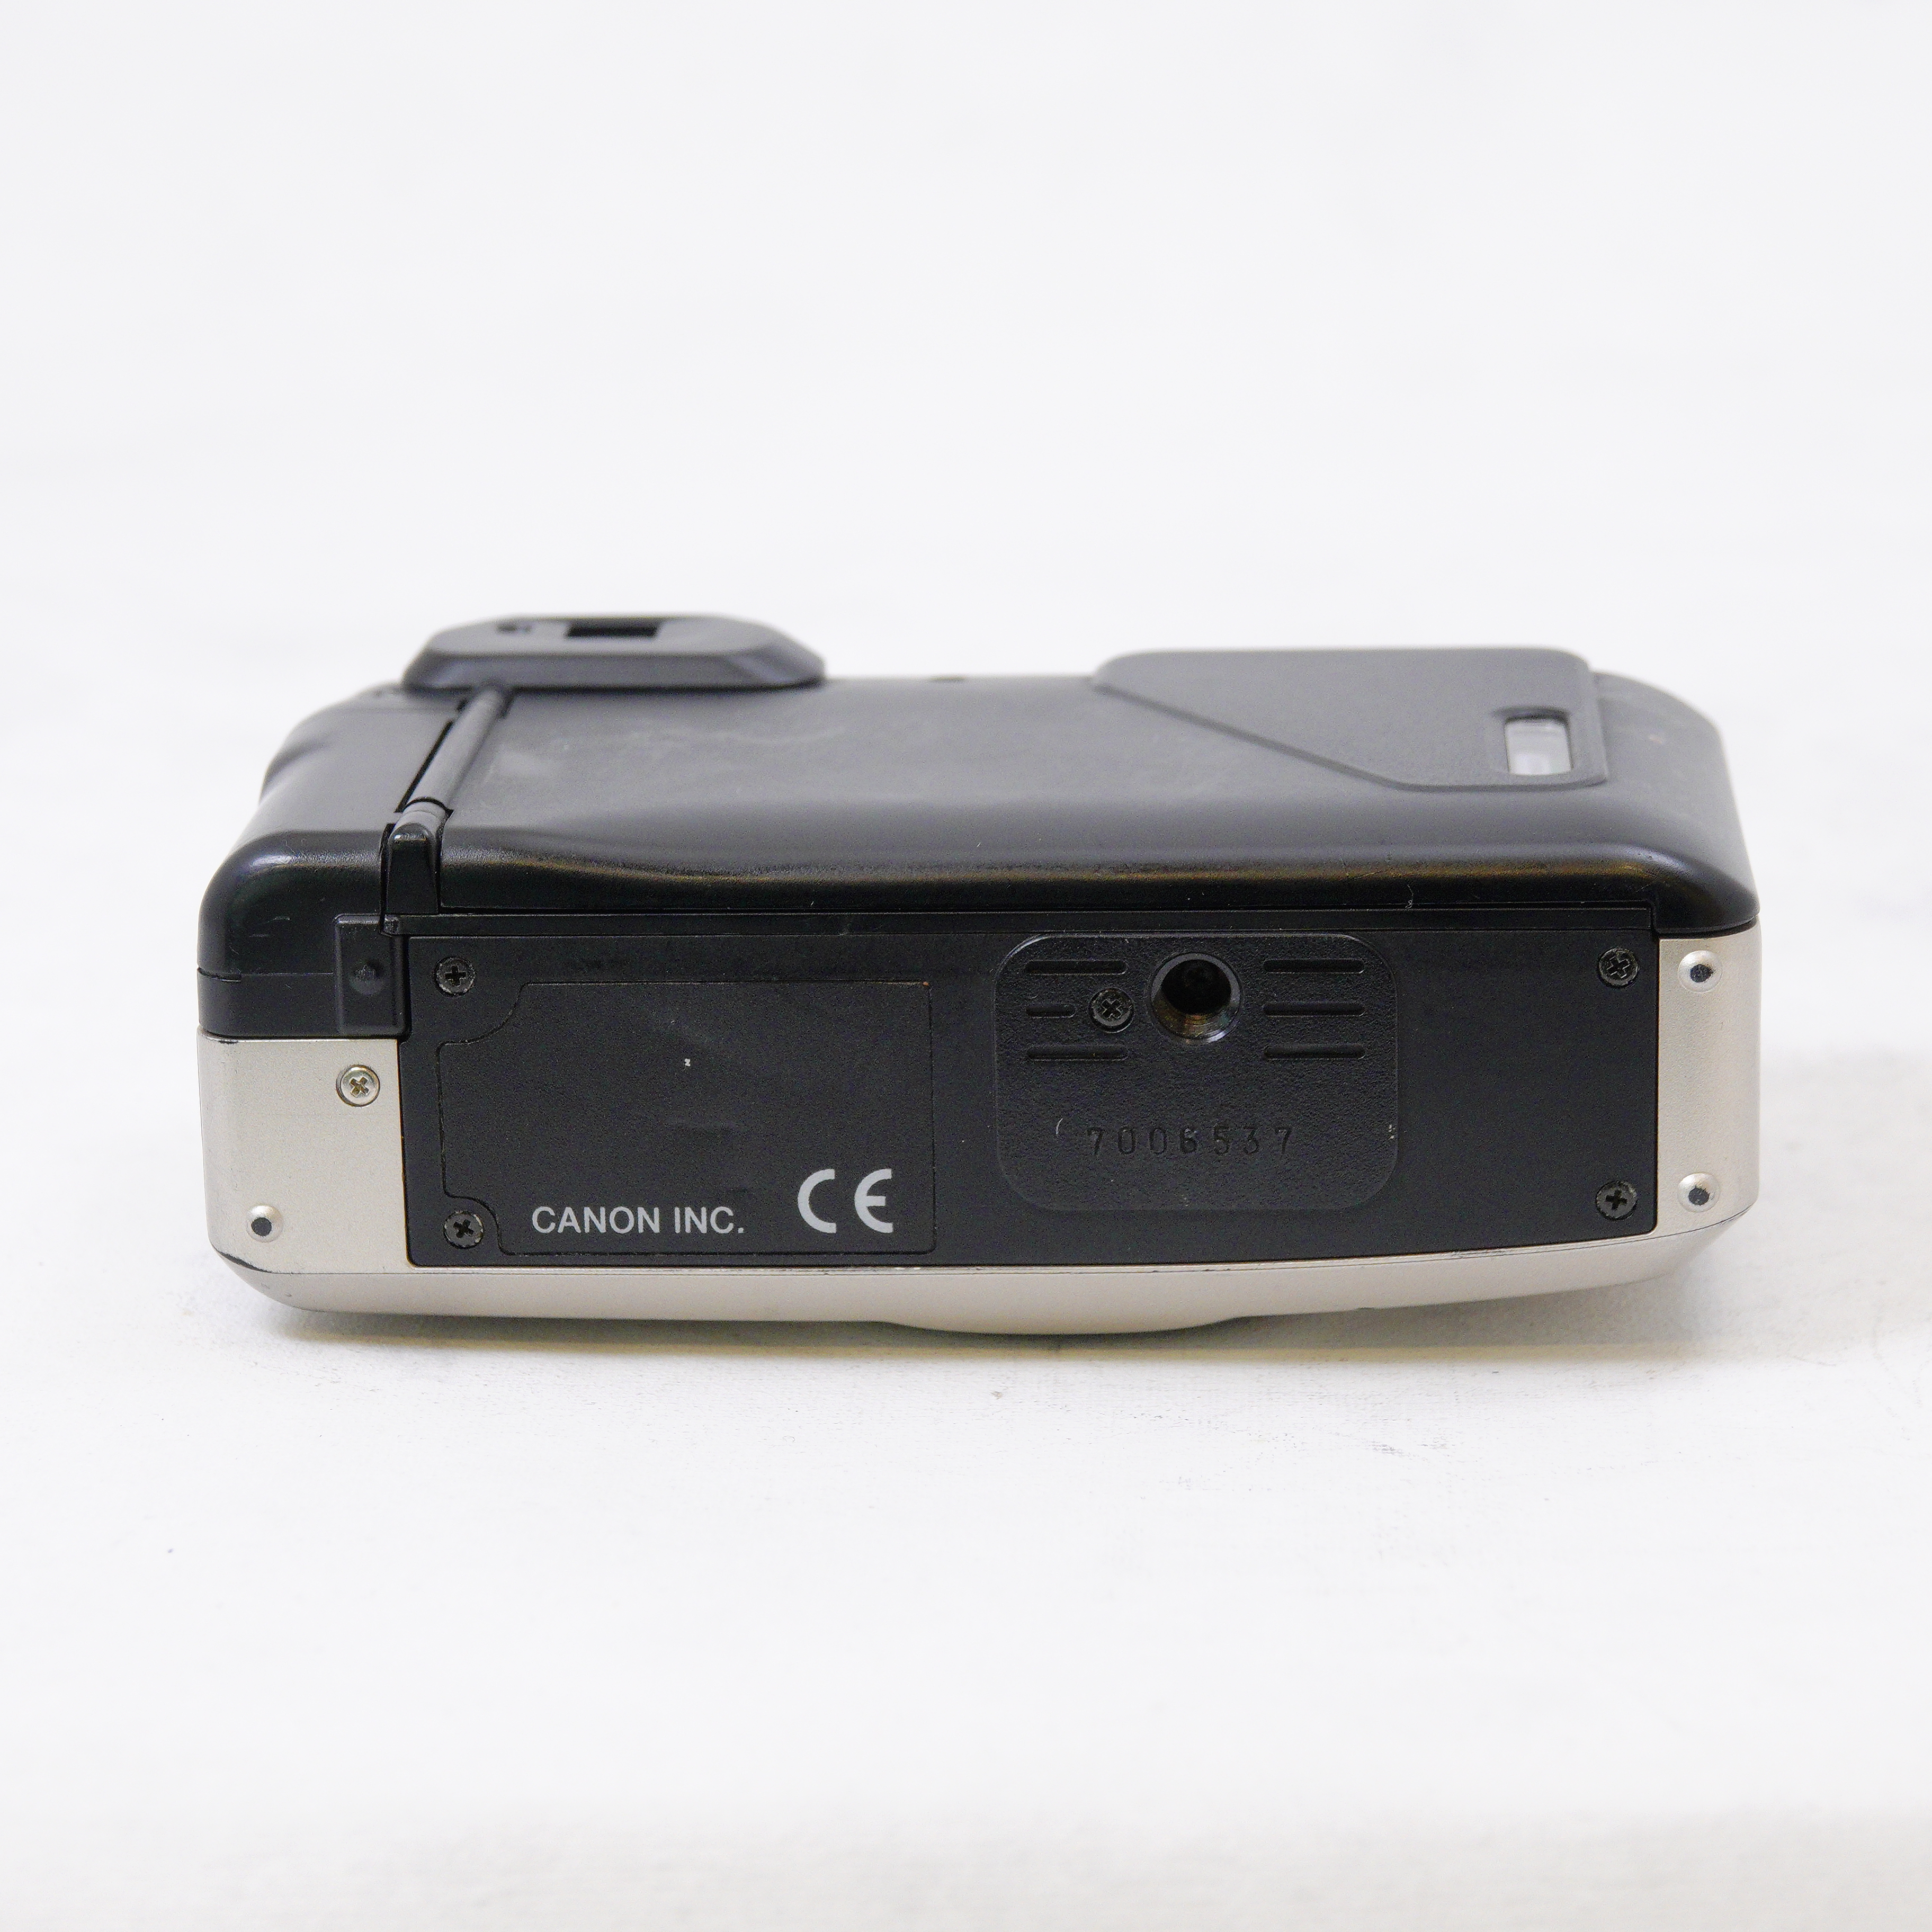 Canon Prima Zoom 60 con Rollo Fujifilm Superia 400 - Usado